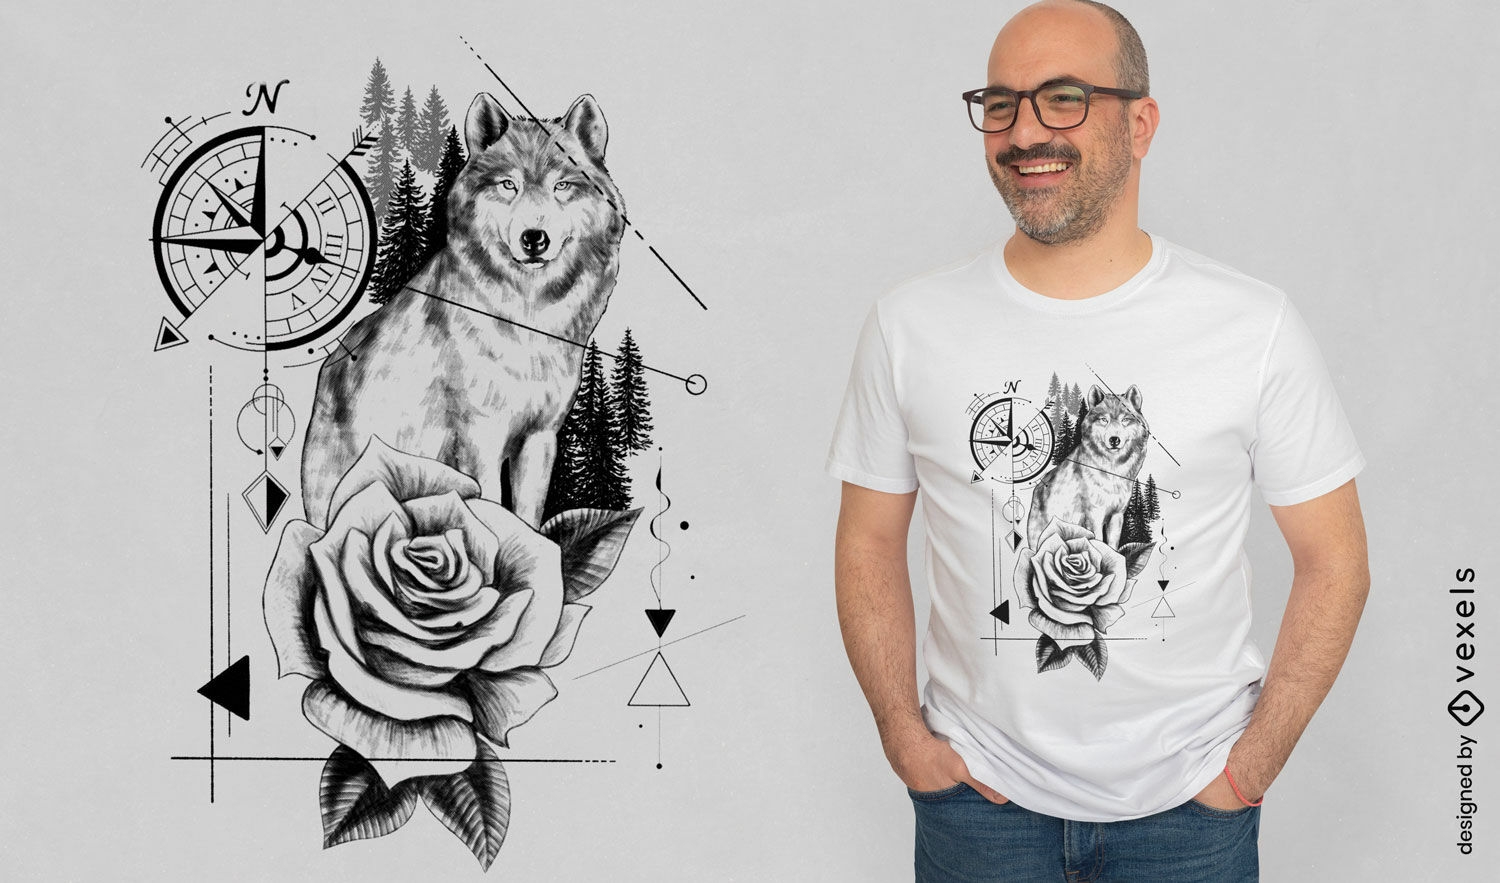 Wolf-Tier- und Rosen-T-Shirt-Design